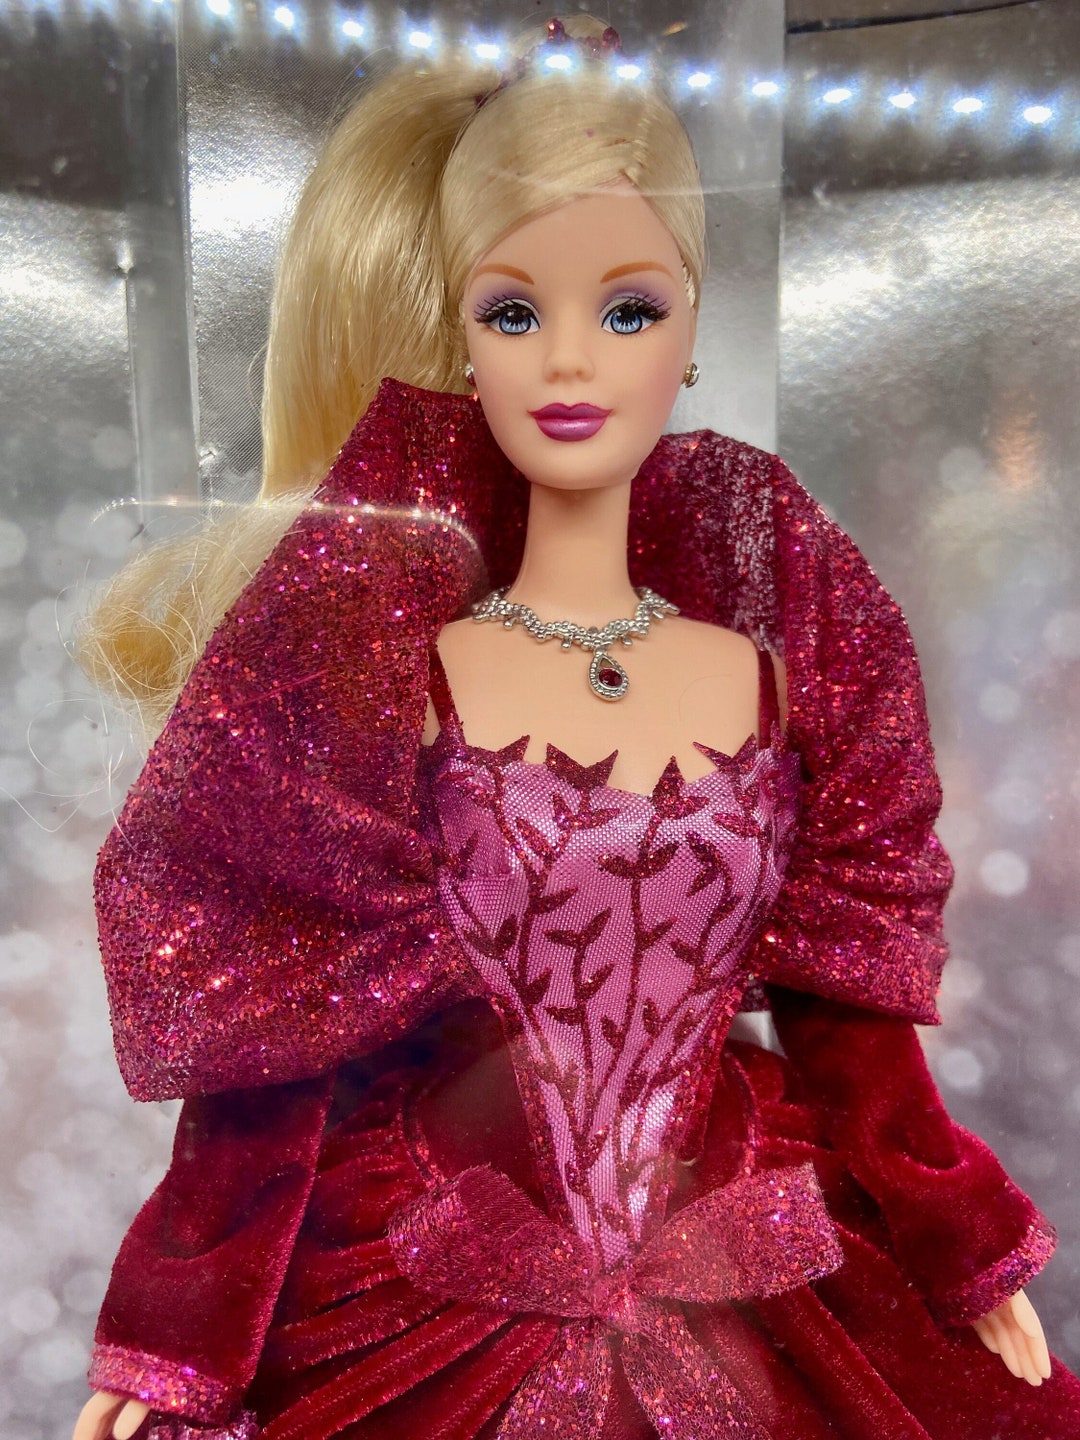 2002 Holiday Celebration Barbie - Etsy